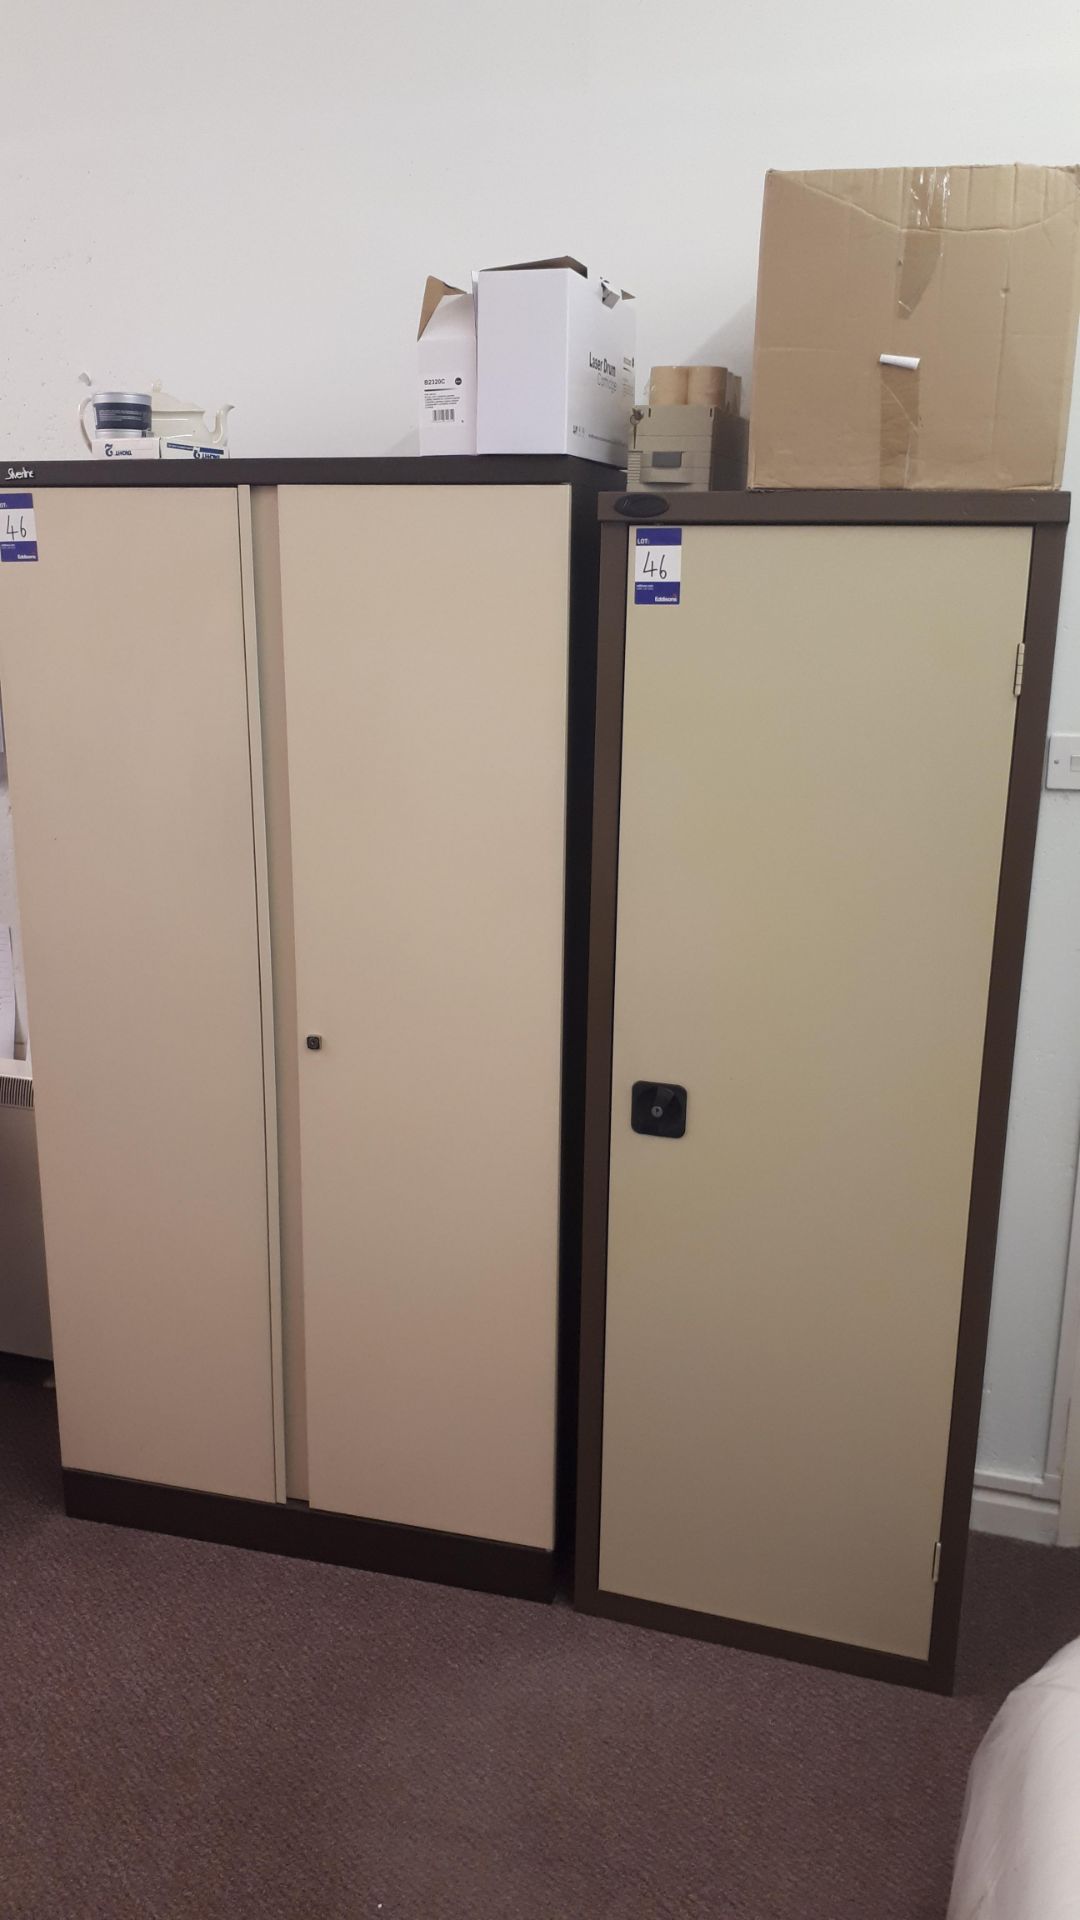 Silverline double door cabinet, and single door metal cabinet